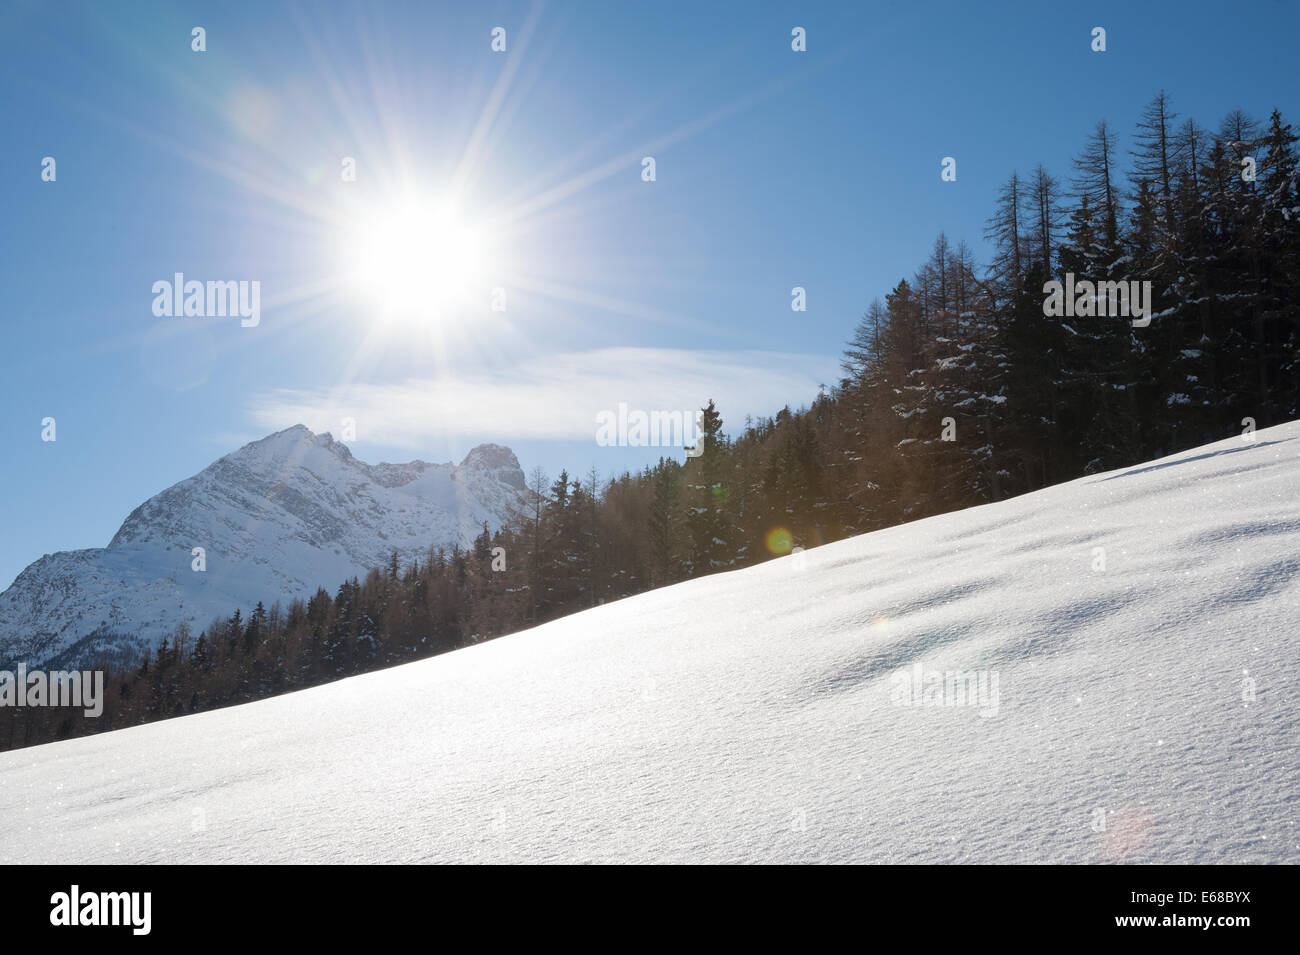 Sun bassa sulla neve nelle Alpi svizzere nei pressi del villaggio di Saas-Fee. Foto Stock